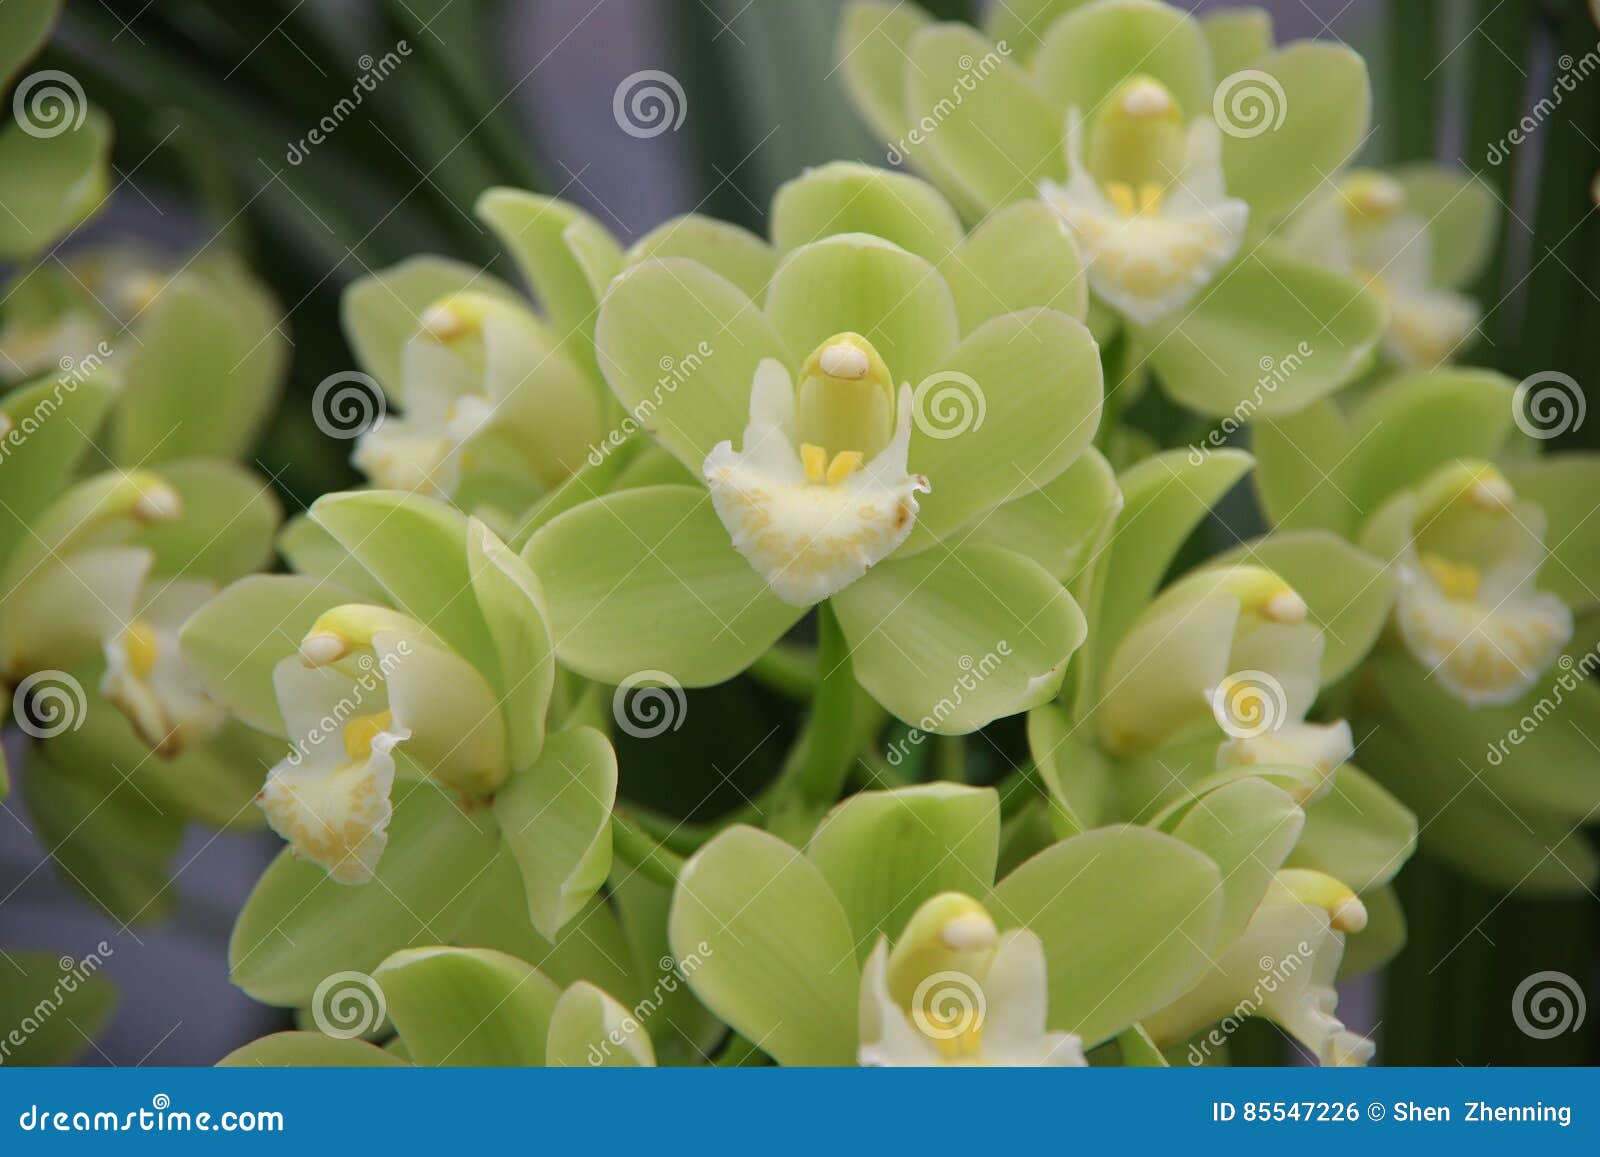 Orquídea verde foto de archivo. Imagen de flores, ornamental - 85547226